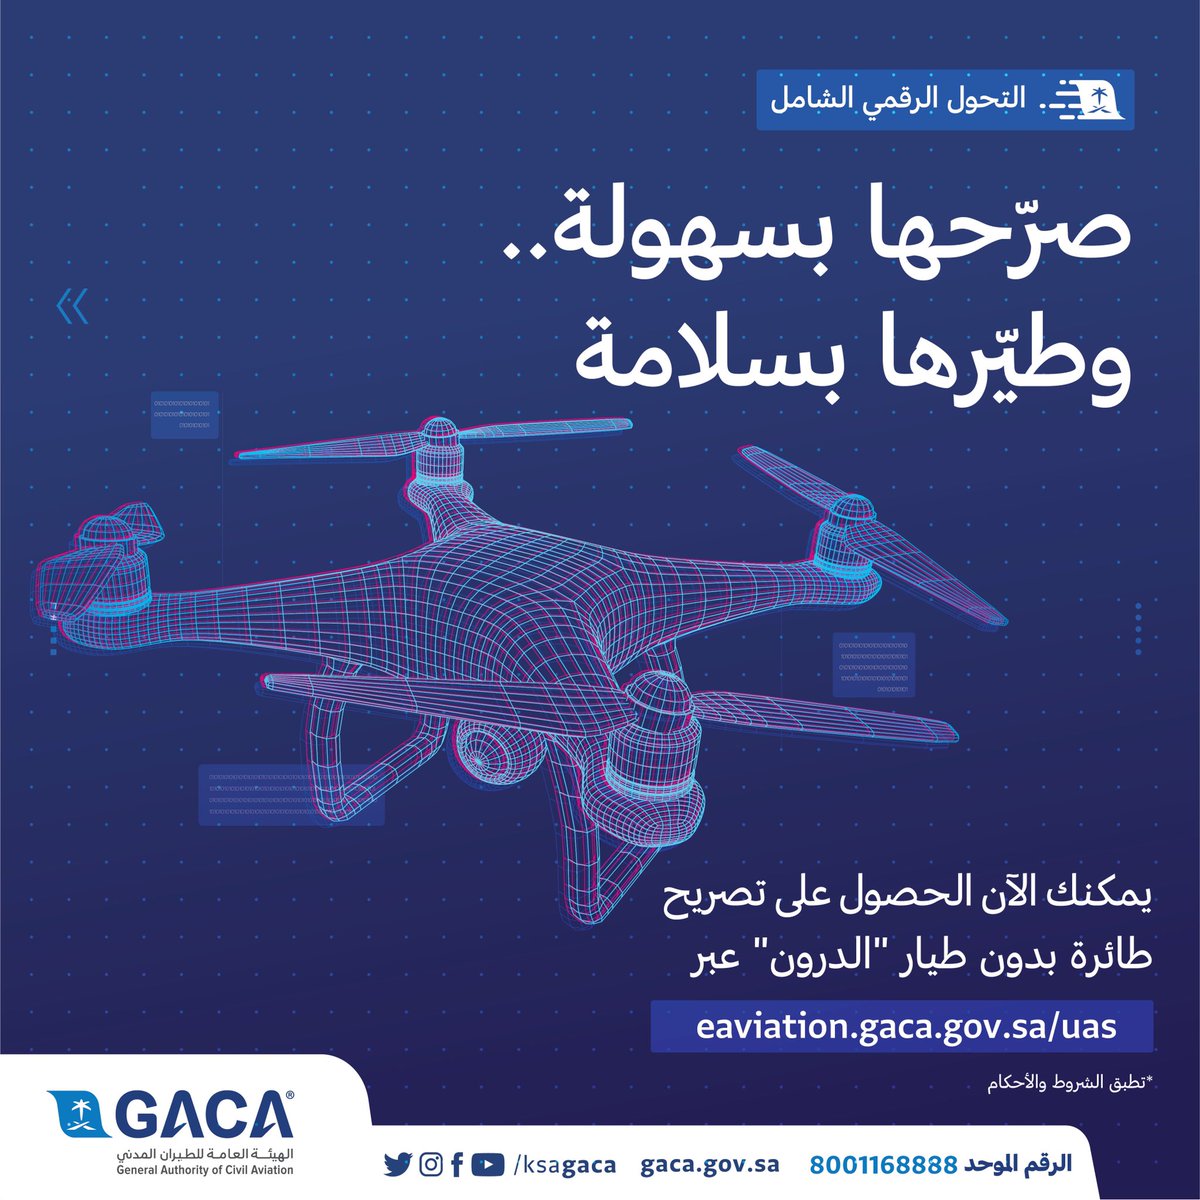 استيراد طائرات بدون طيار في السعودية مسموح مشروع يلوح في الافق